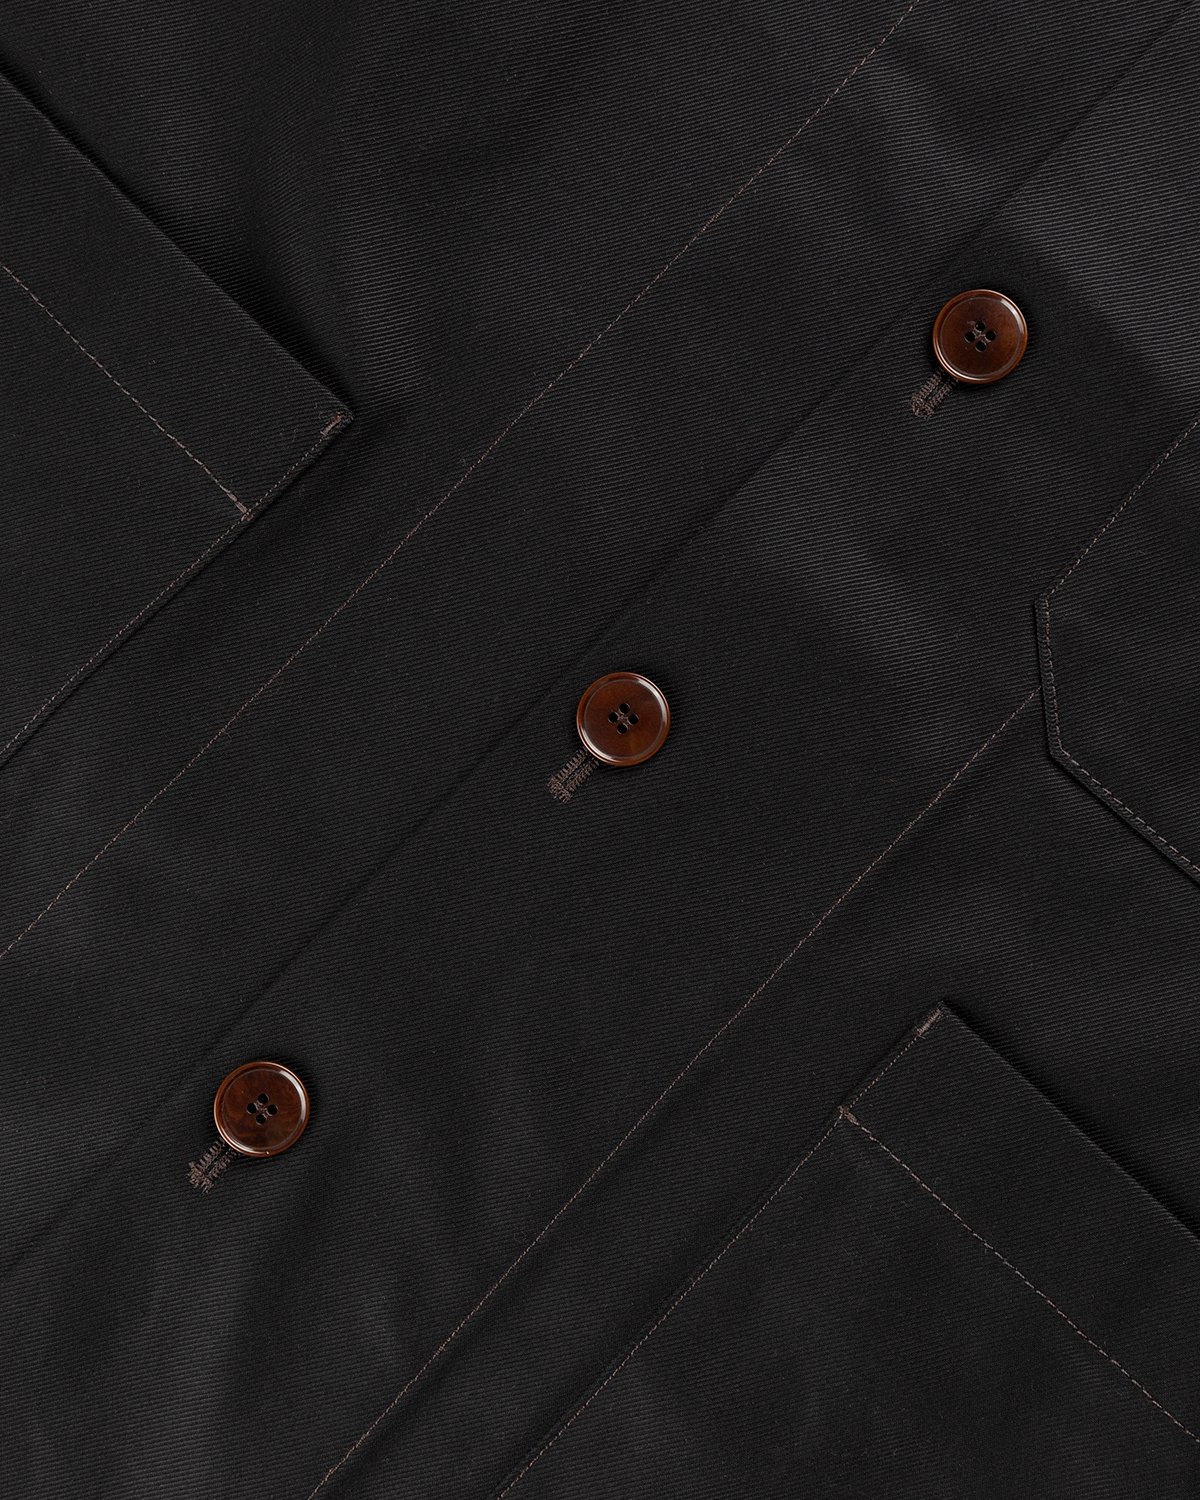 Acne Studios - Cotton Twill Jacket Black - Clothing - Black - Image 5